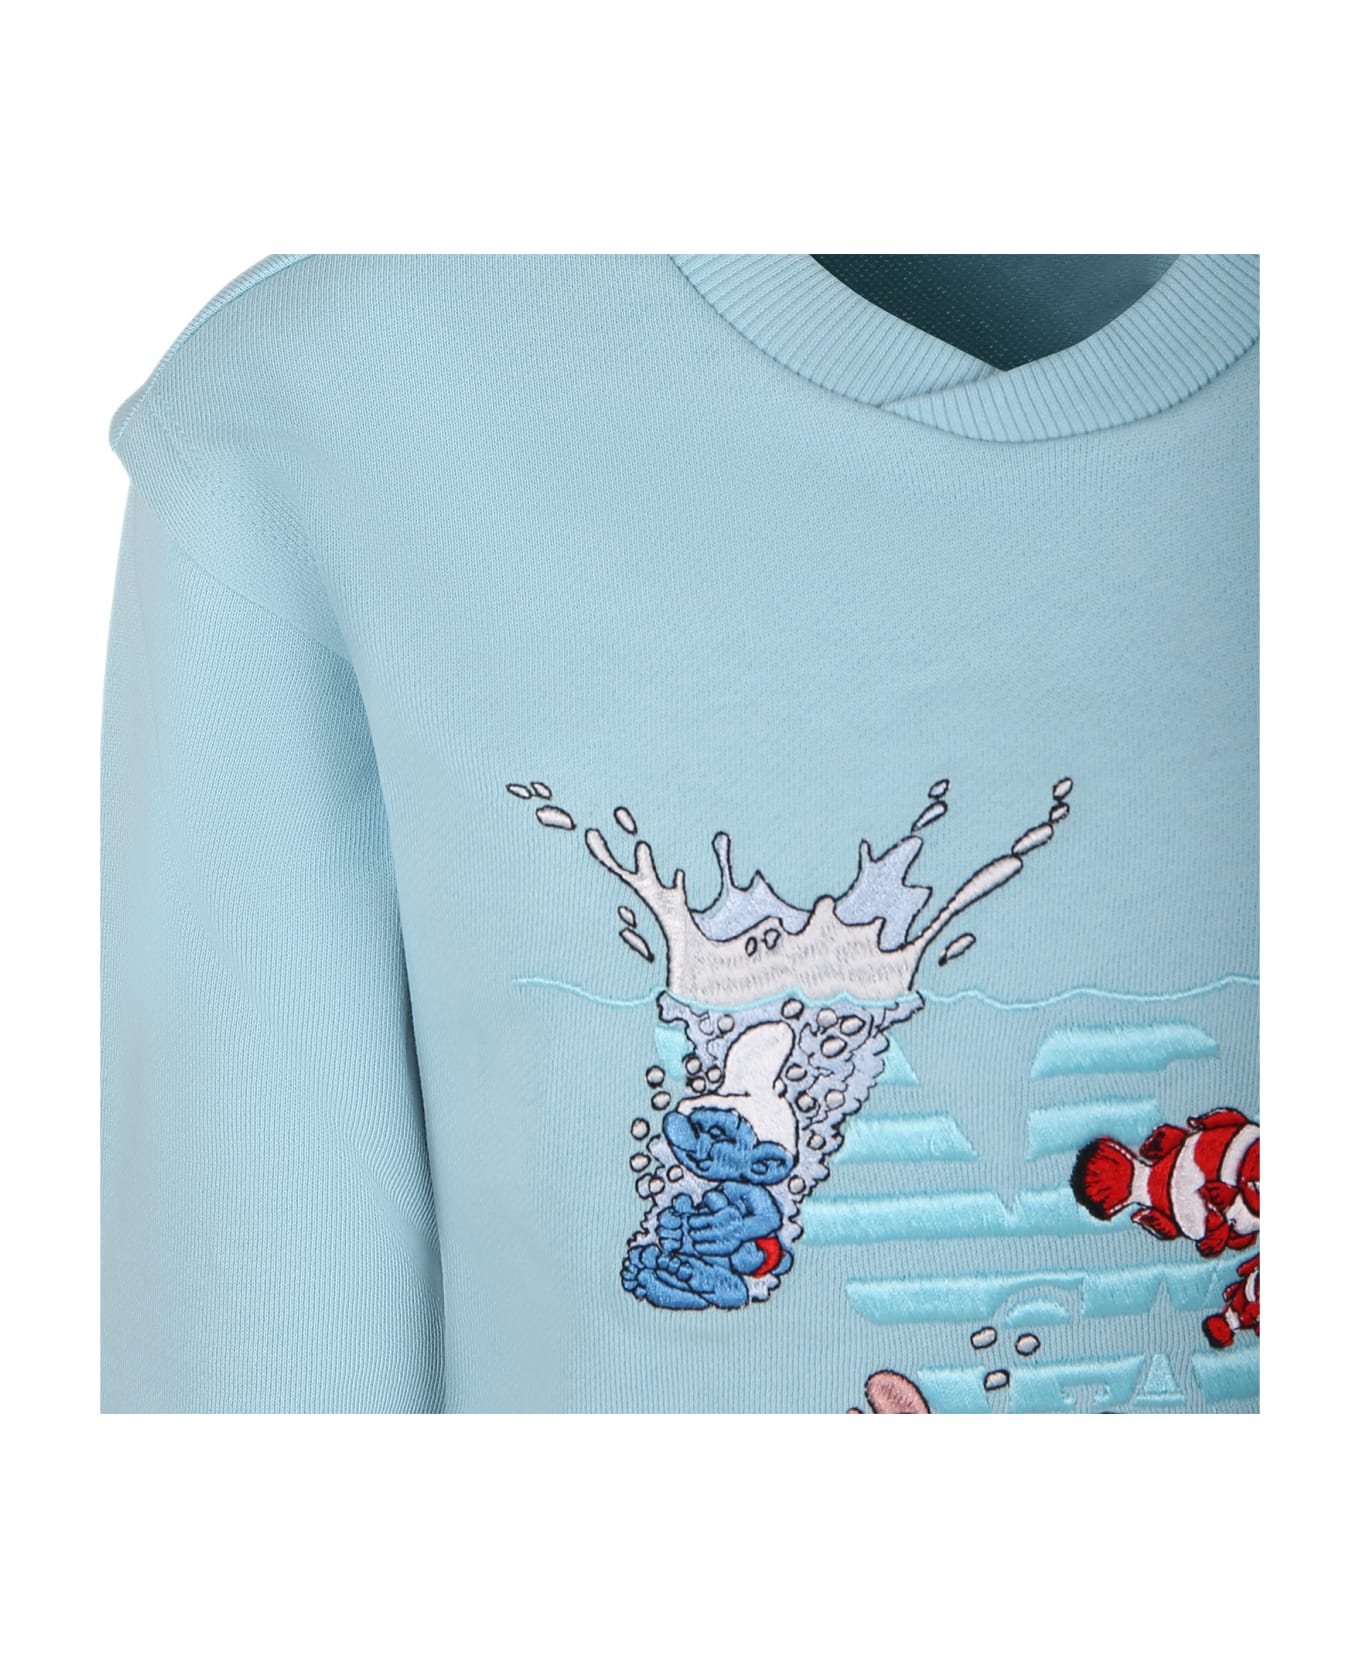 Emporio Armani Sky Blue Sweatshirt For Boy With The Smurfs - Light Blue